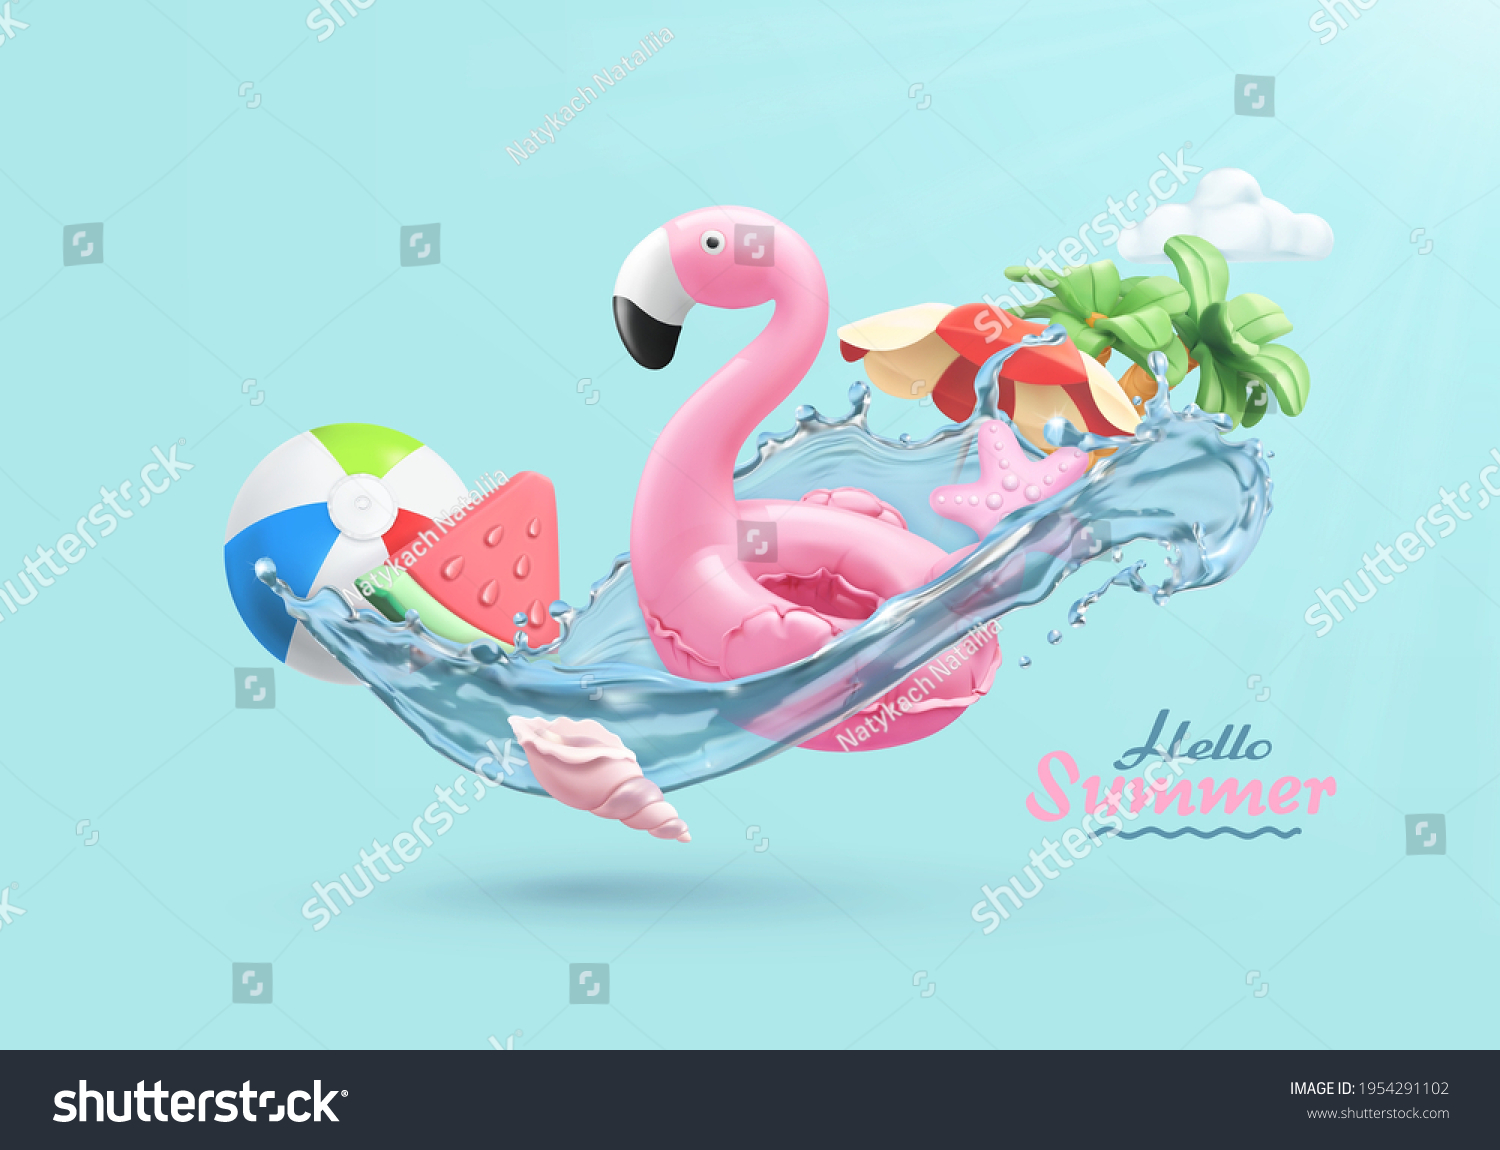 Sommerfestlicher Hintergrund. 3D-Vektorgrafik realistisch. Flamingo aufblasbares Spielzeug, Wassermelone, Palmen, Muschel, Wassersplash – Stockvektorgrafik